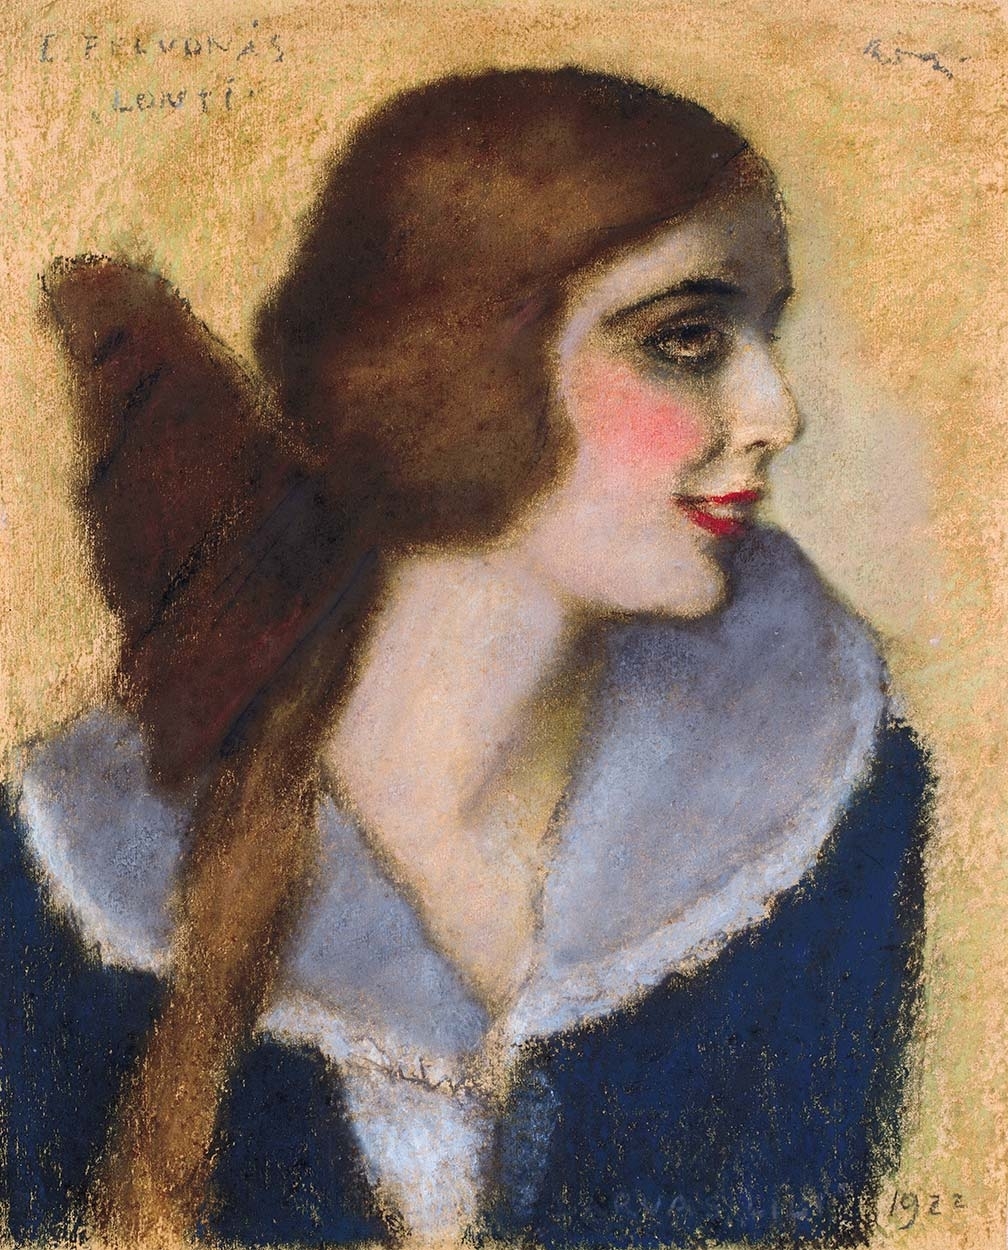 Rippl-Rónai József (1861-1927) Darvas Lili's portrait as Lonti, 1922